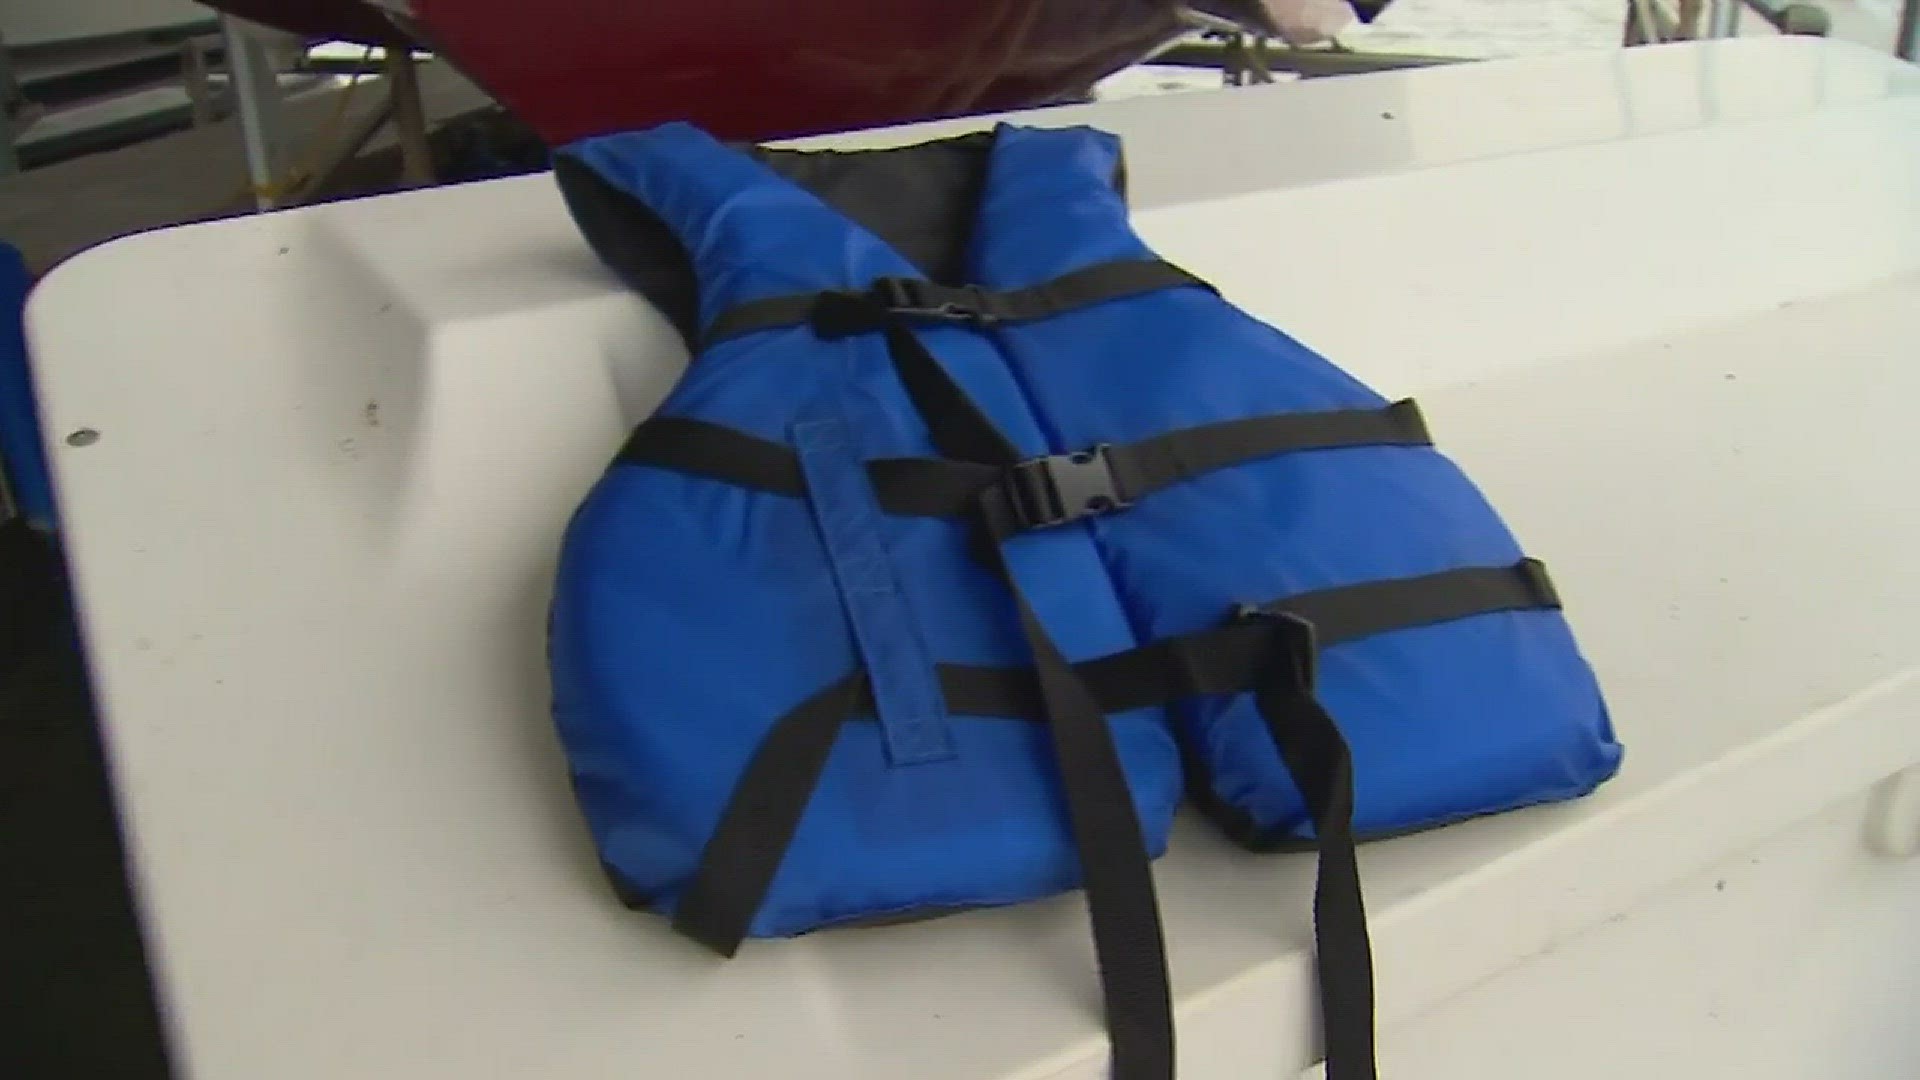 City of Grapevine starts "loan a life jacket" program